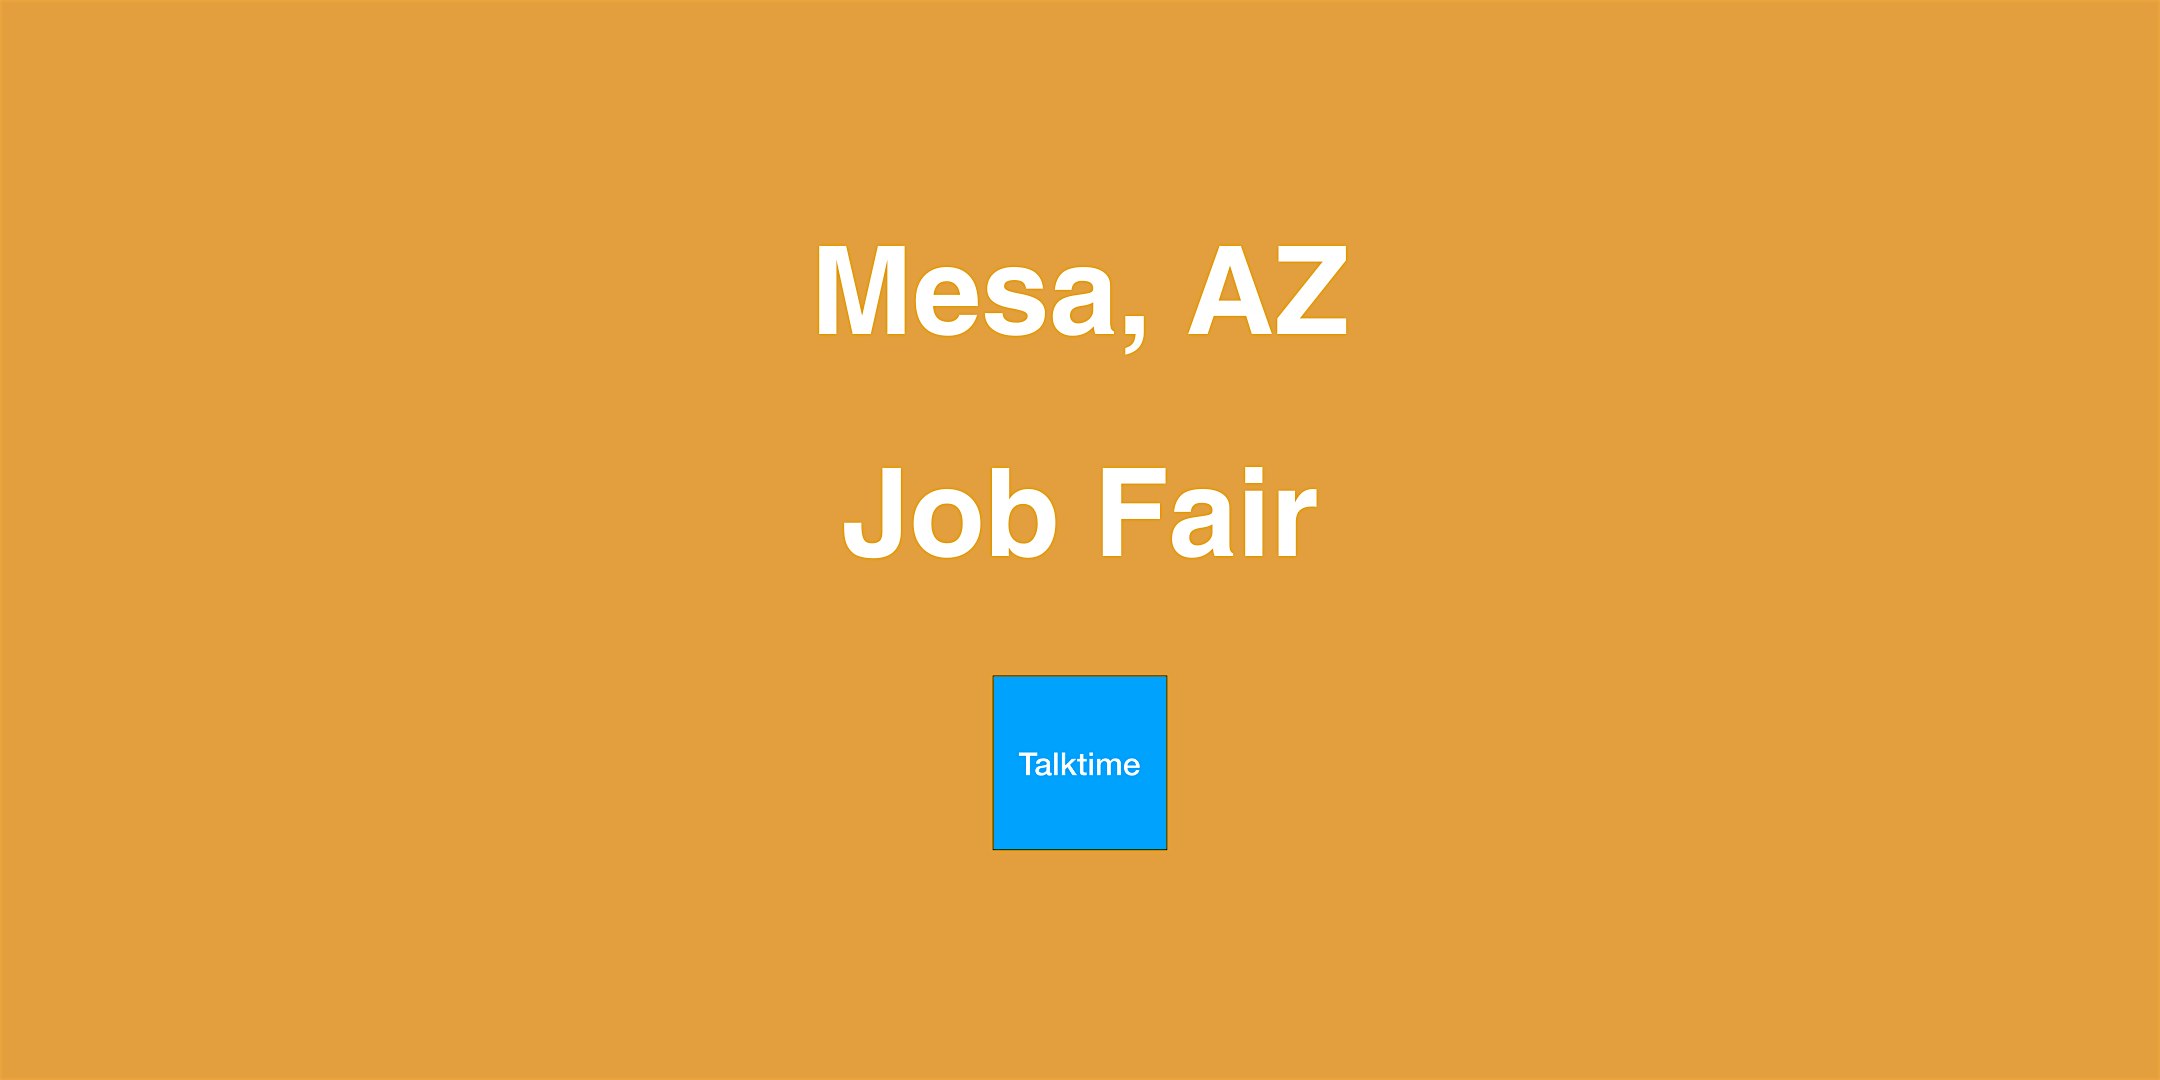 Job Fair - Mesa